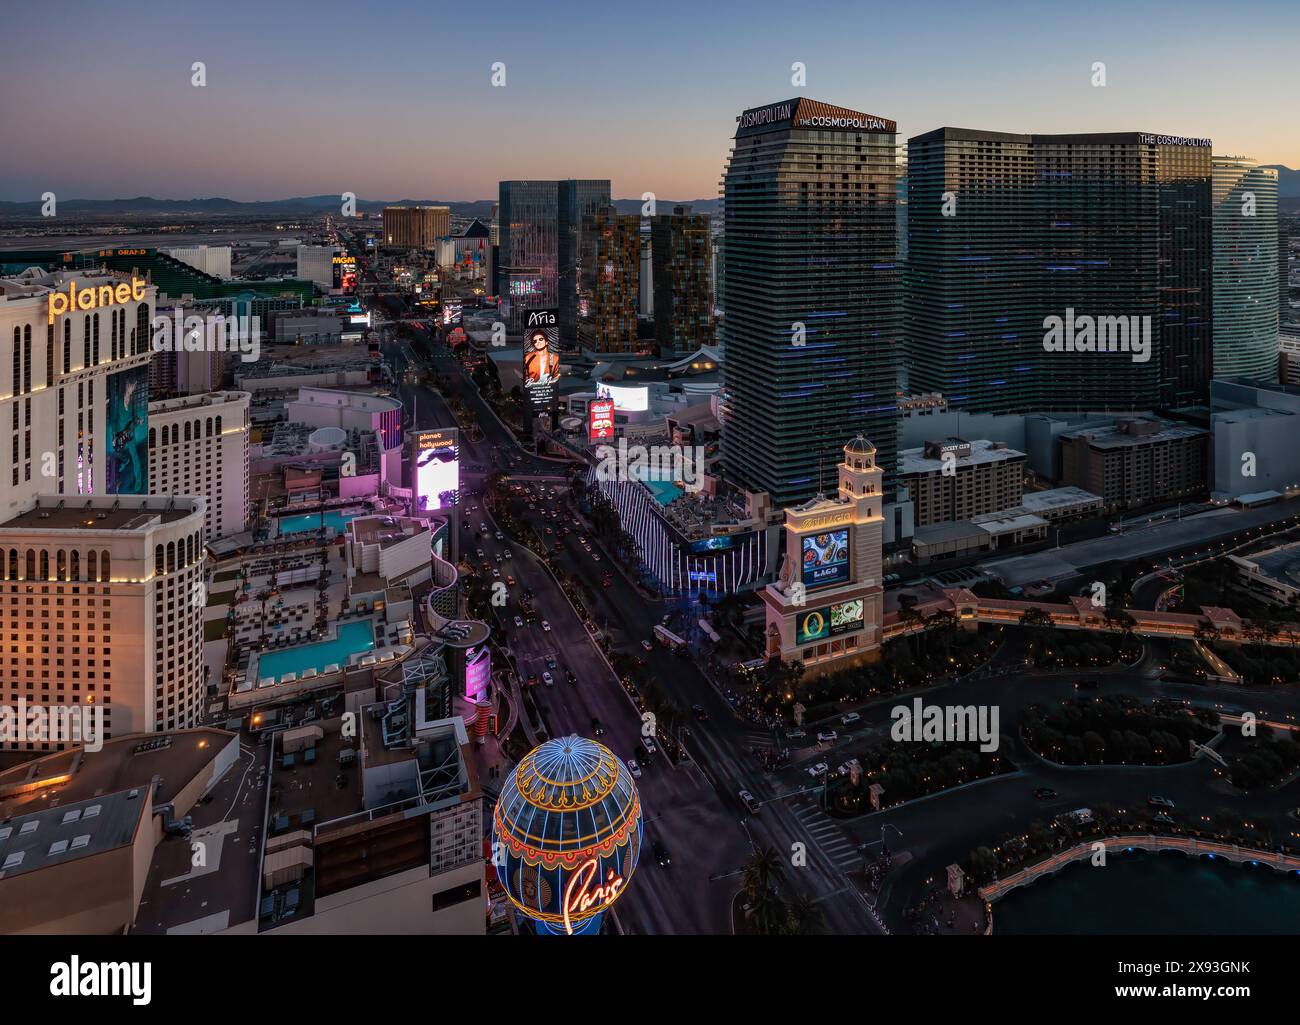 Casinos along Las Vegas Boulevard in Las Vegas, Nevada Stock Photo